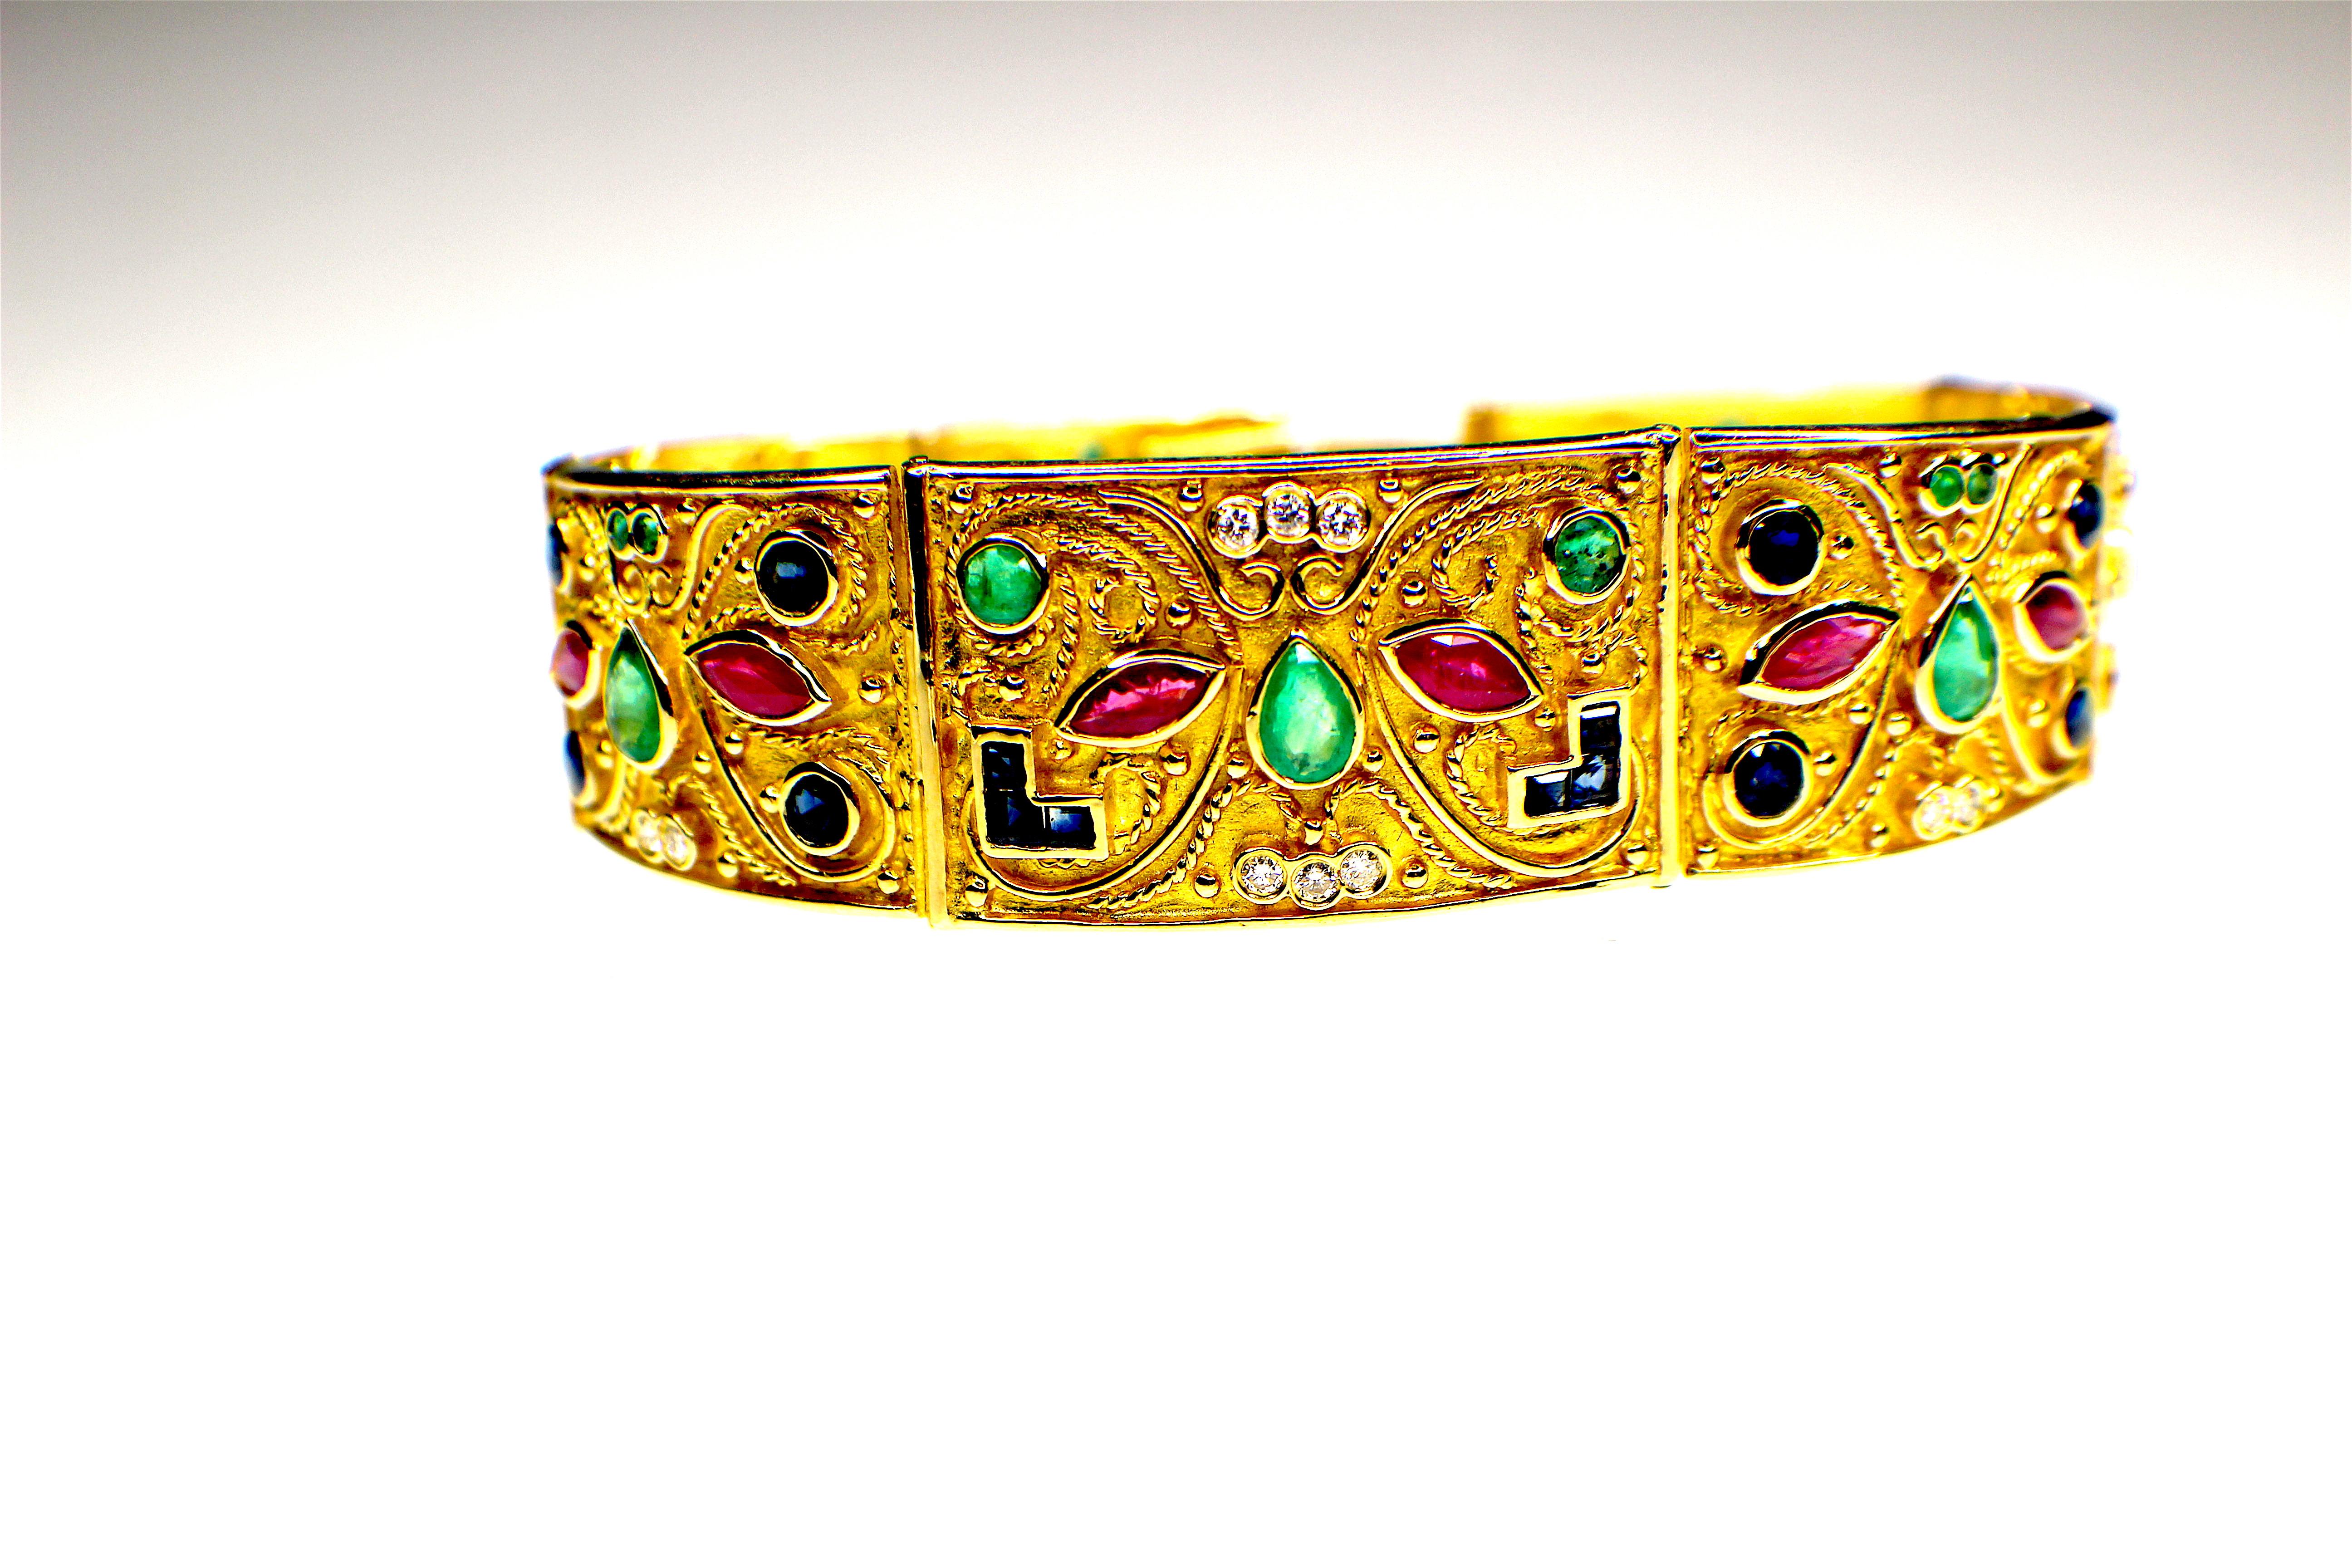 Bracelet de style byzantin, fabriqué à la main, serti de pierres précieuses, datant des années 1980 et serti de rubis, saphirs, émeraudes et diamants en or 18 carats